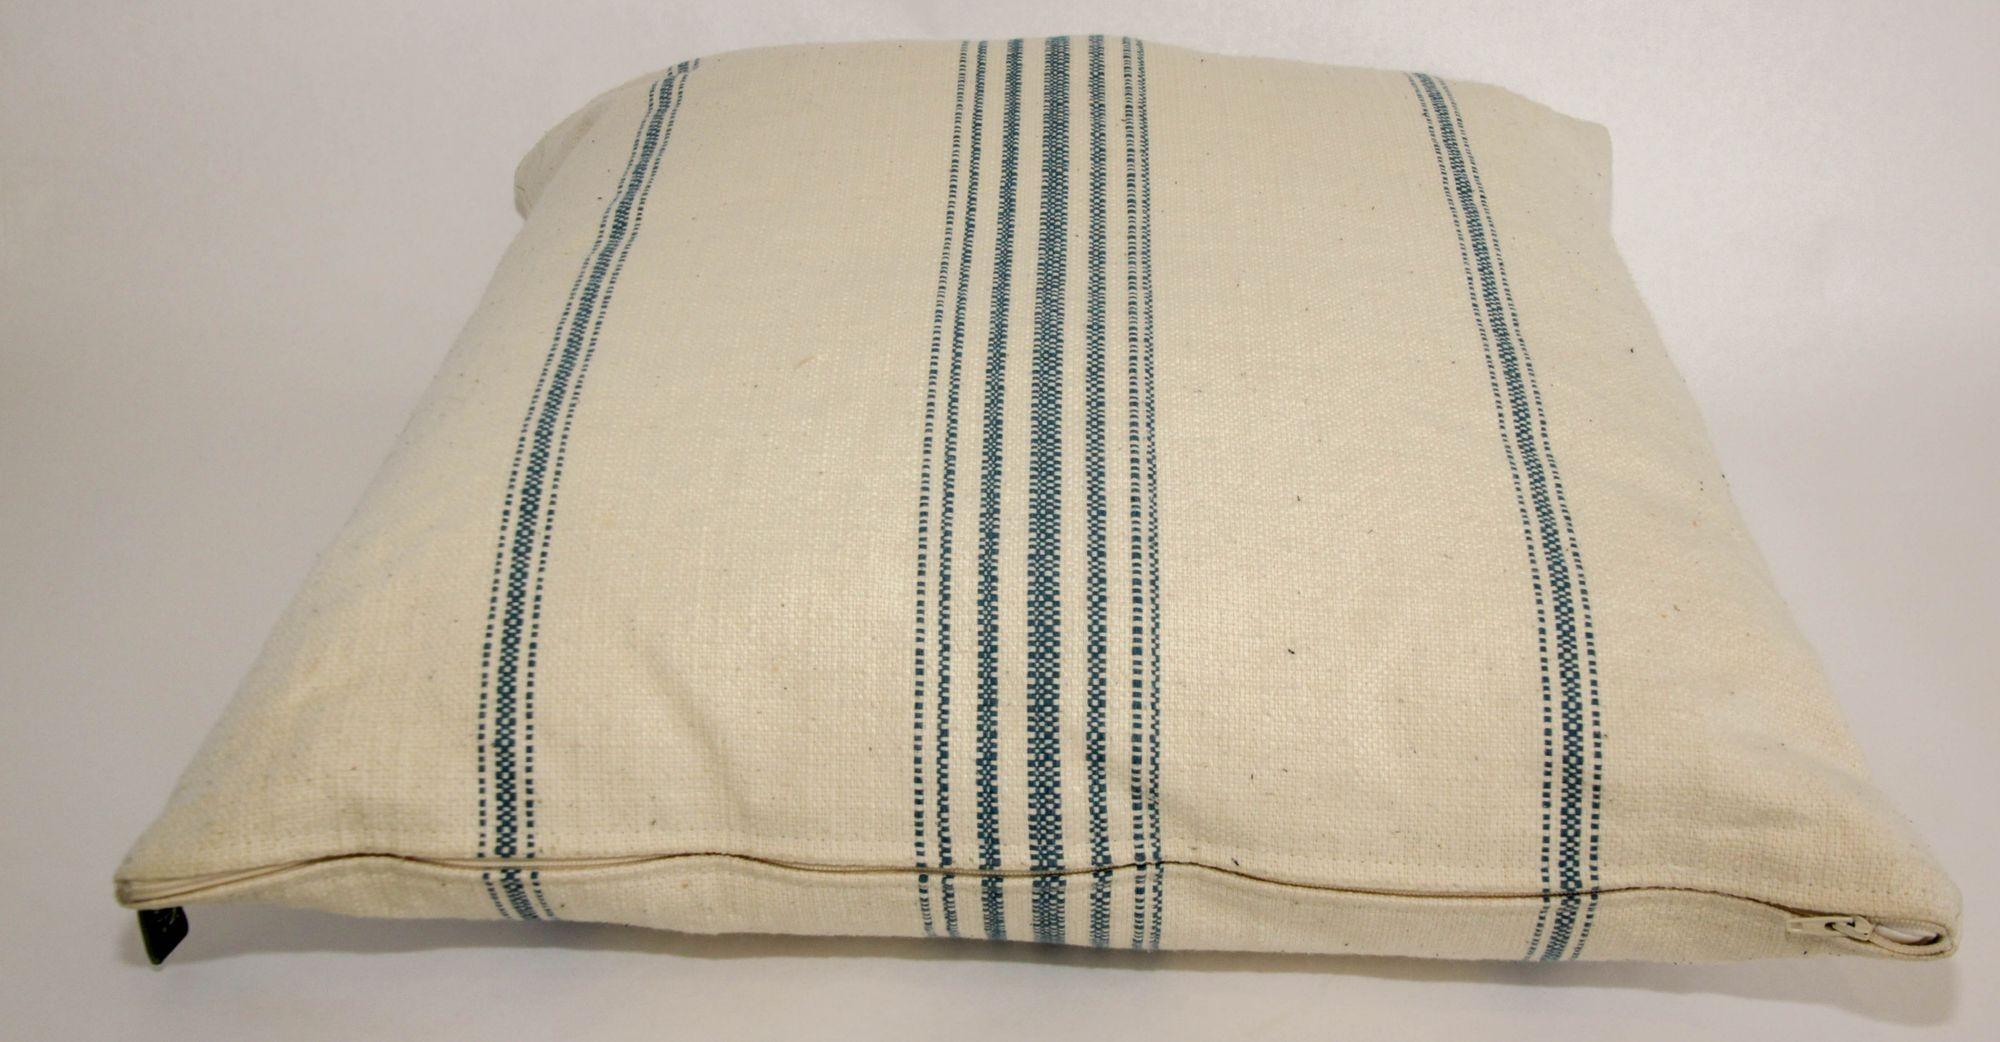 Ralph Lauren Pillow White and Blue Striped Linen Throw Pillow 2